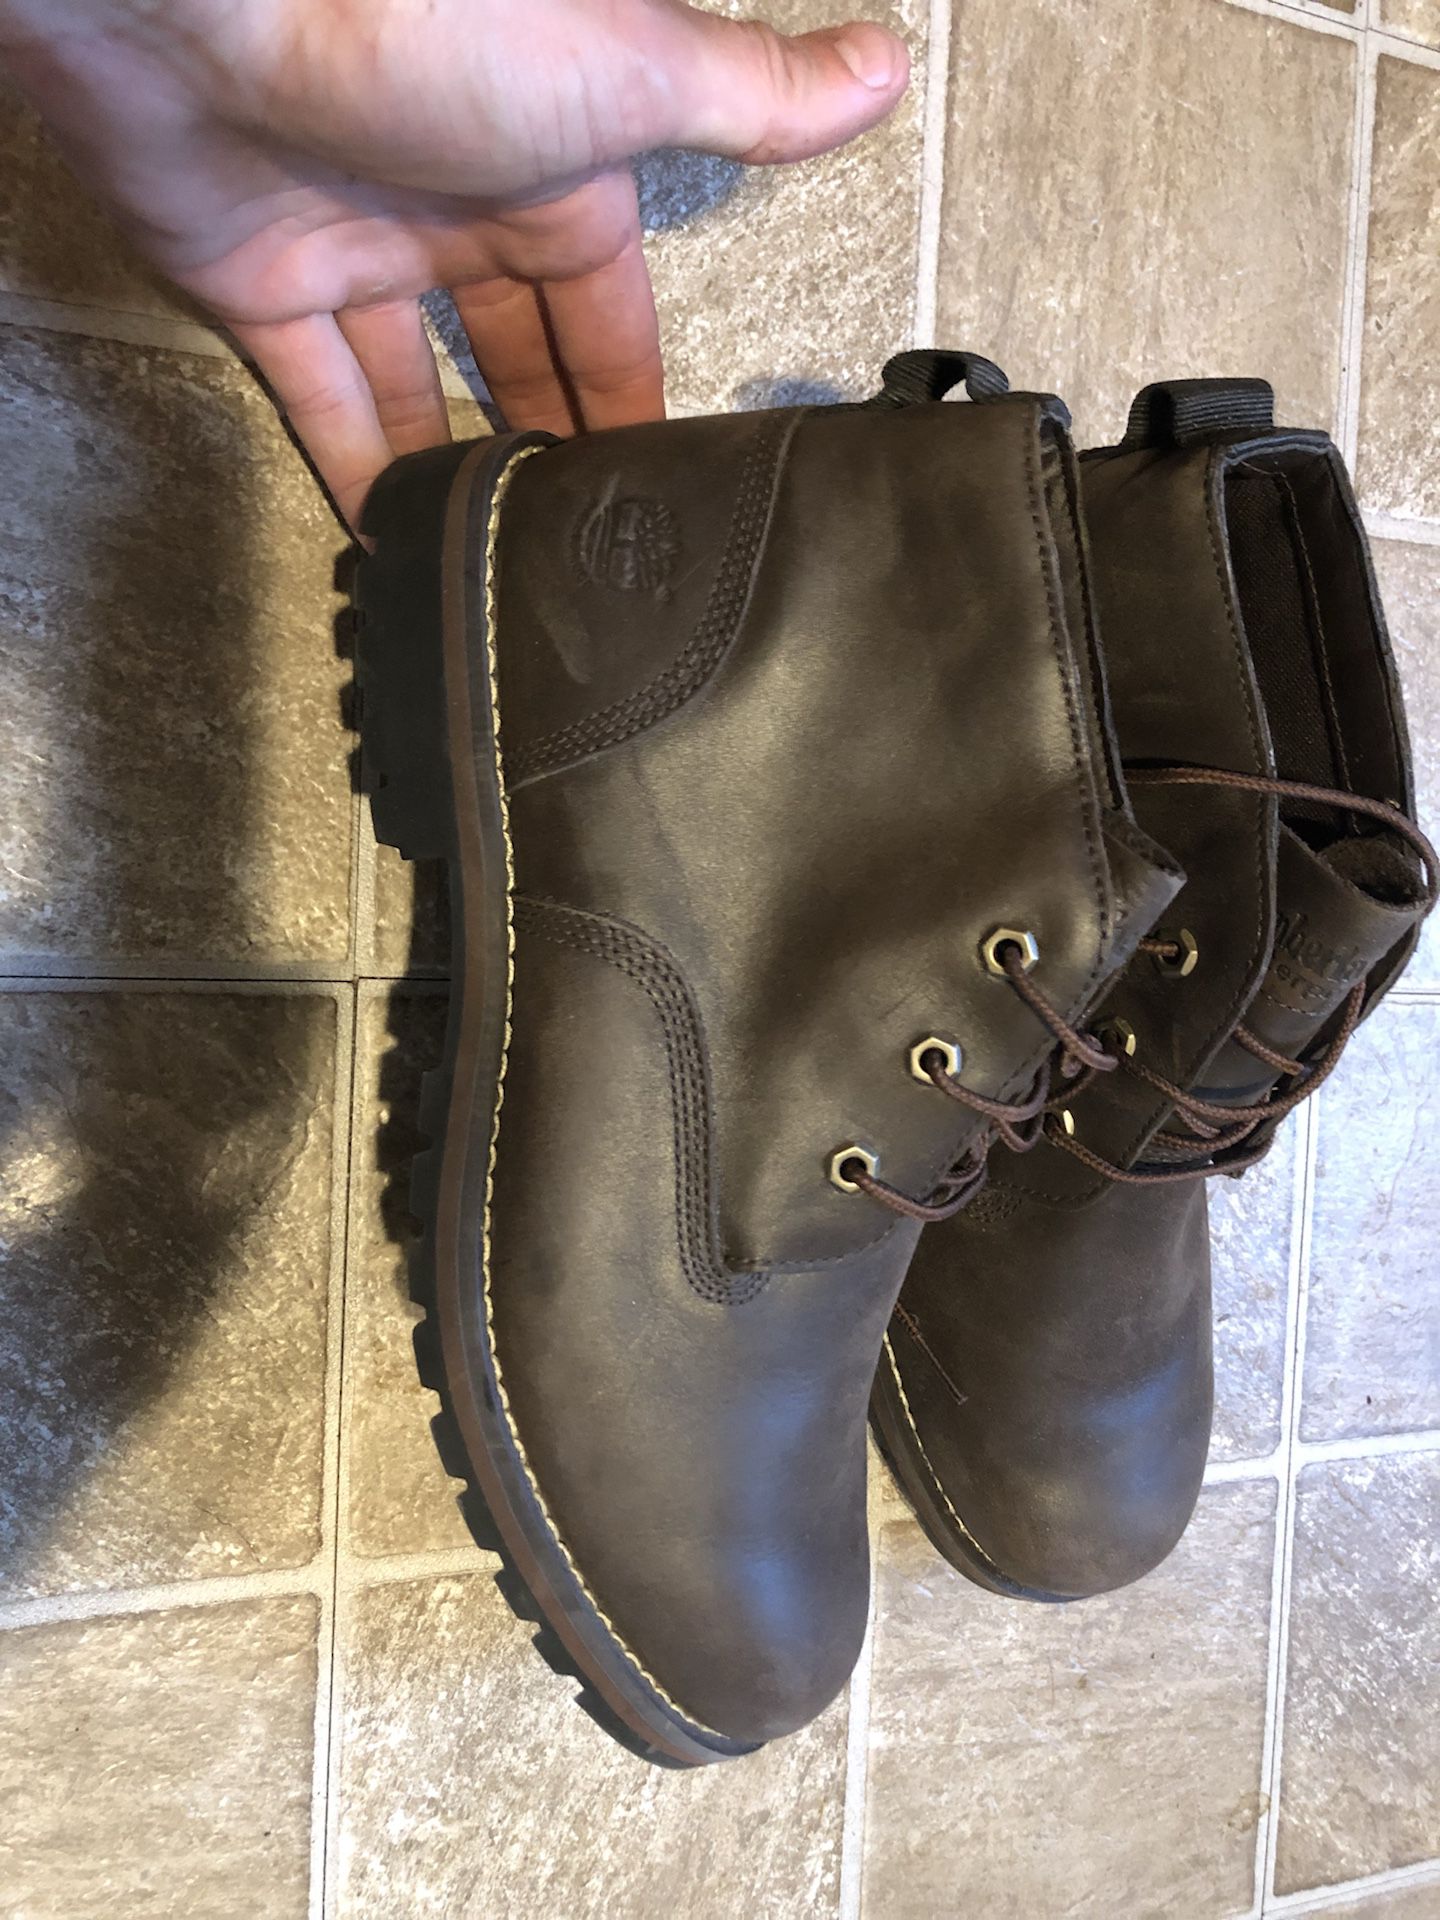 Men’s 10.5 timberland boots waterproof